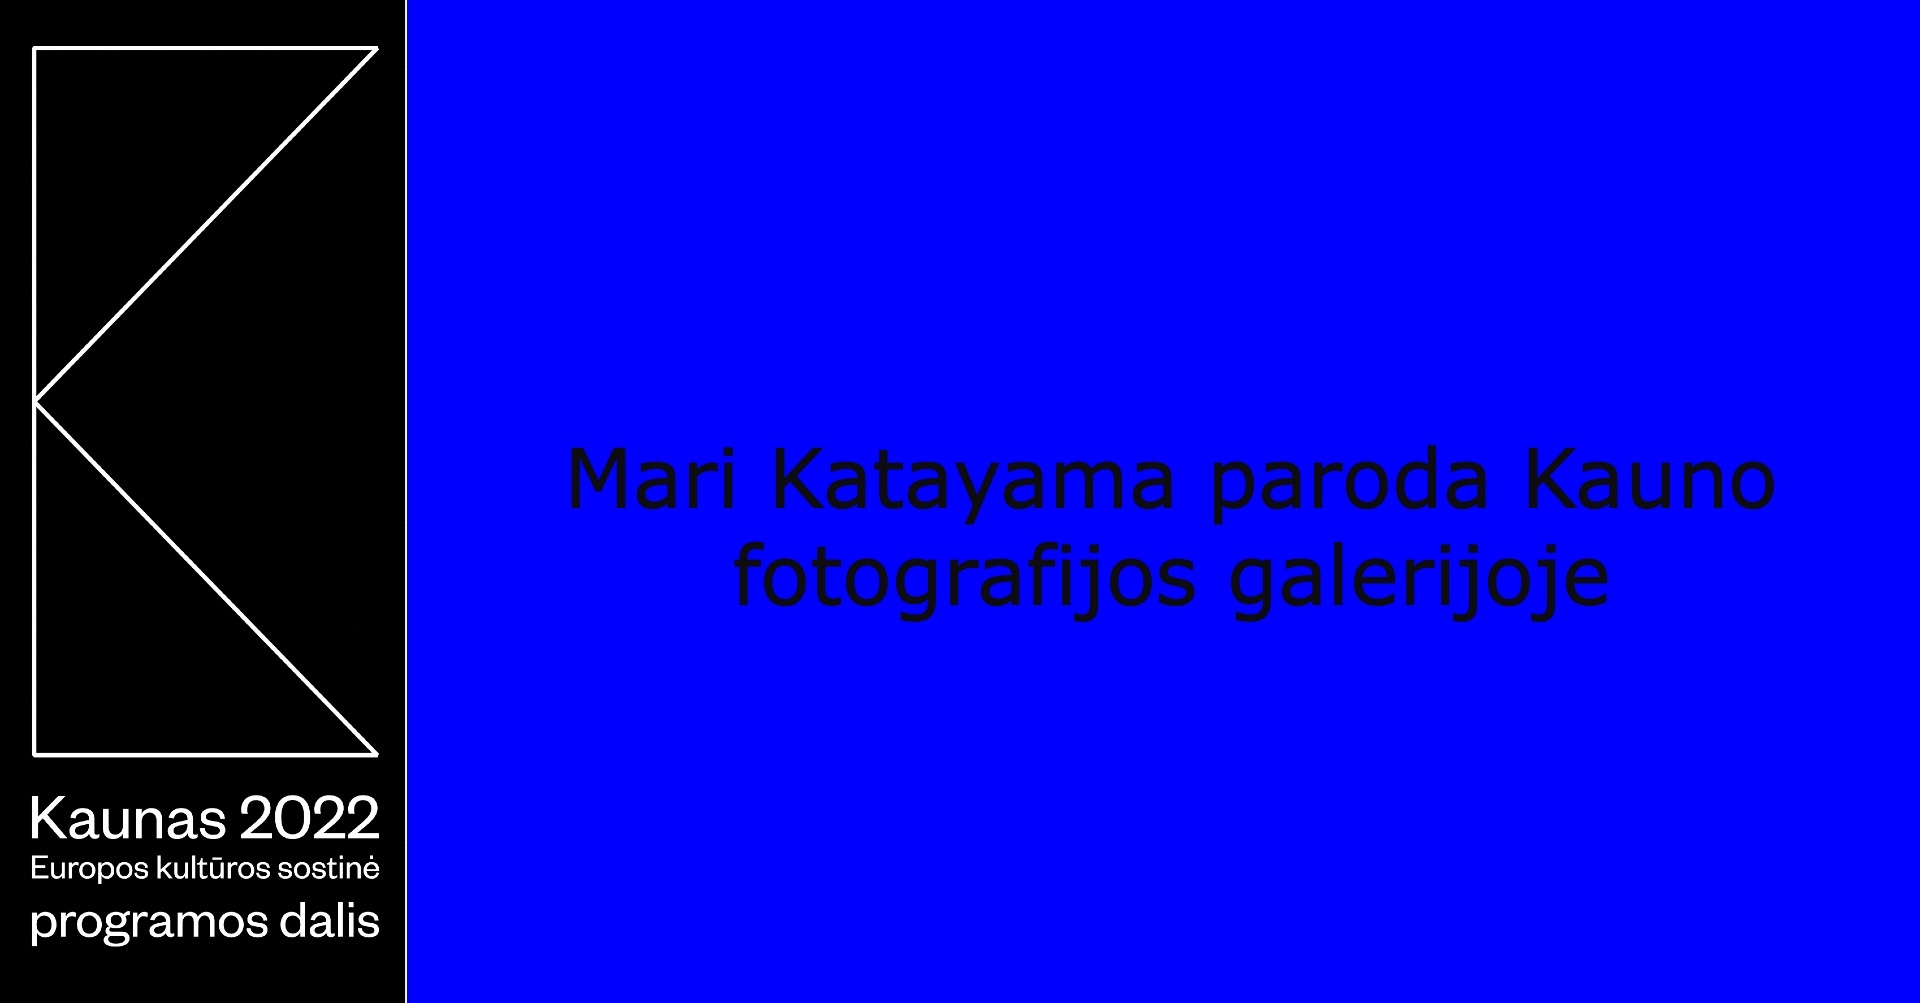 Mari Katayama paroda Kauno fotografijos galerijoje